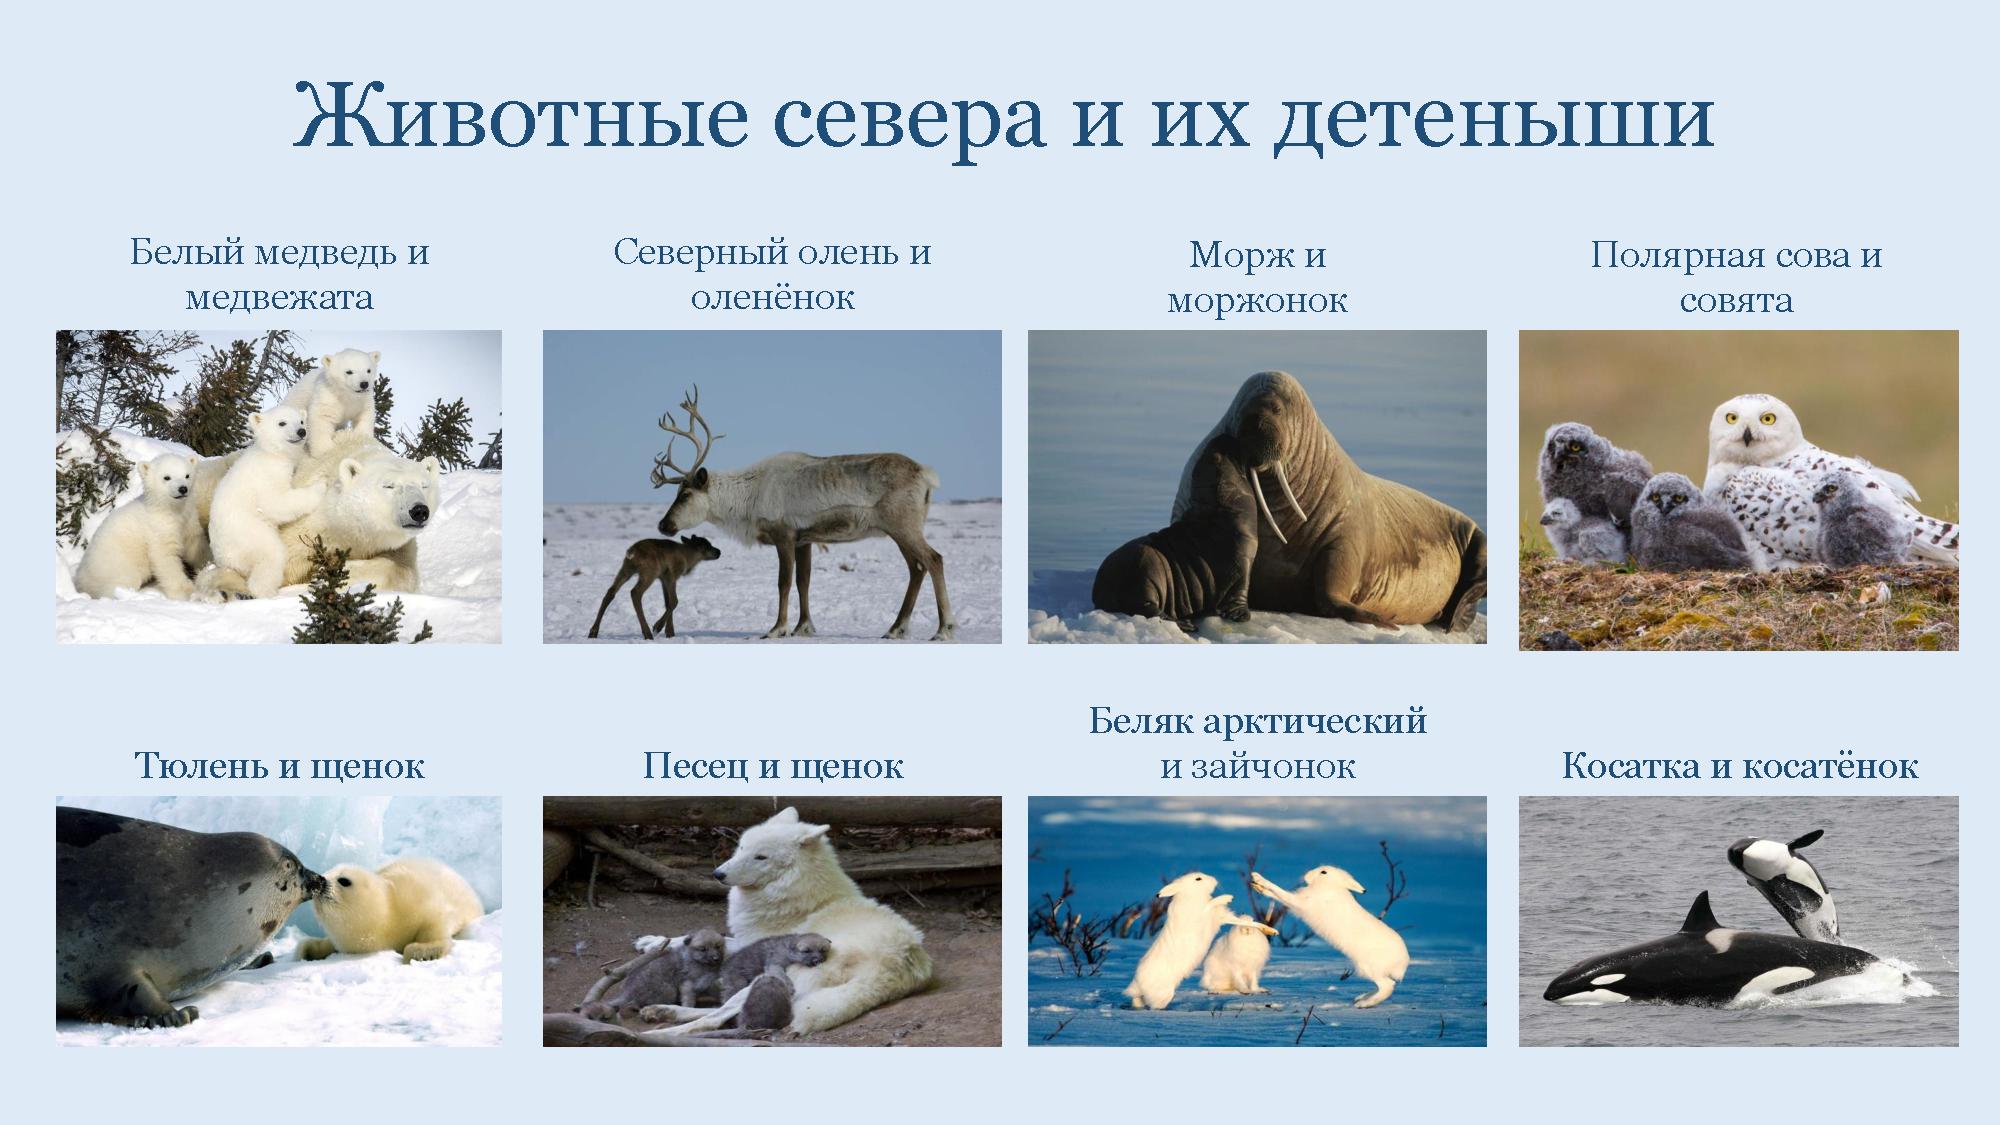 Подпиши рисунки животных арктических пустынь